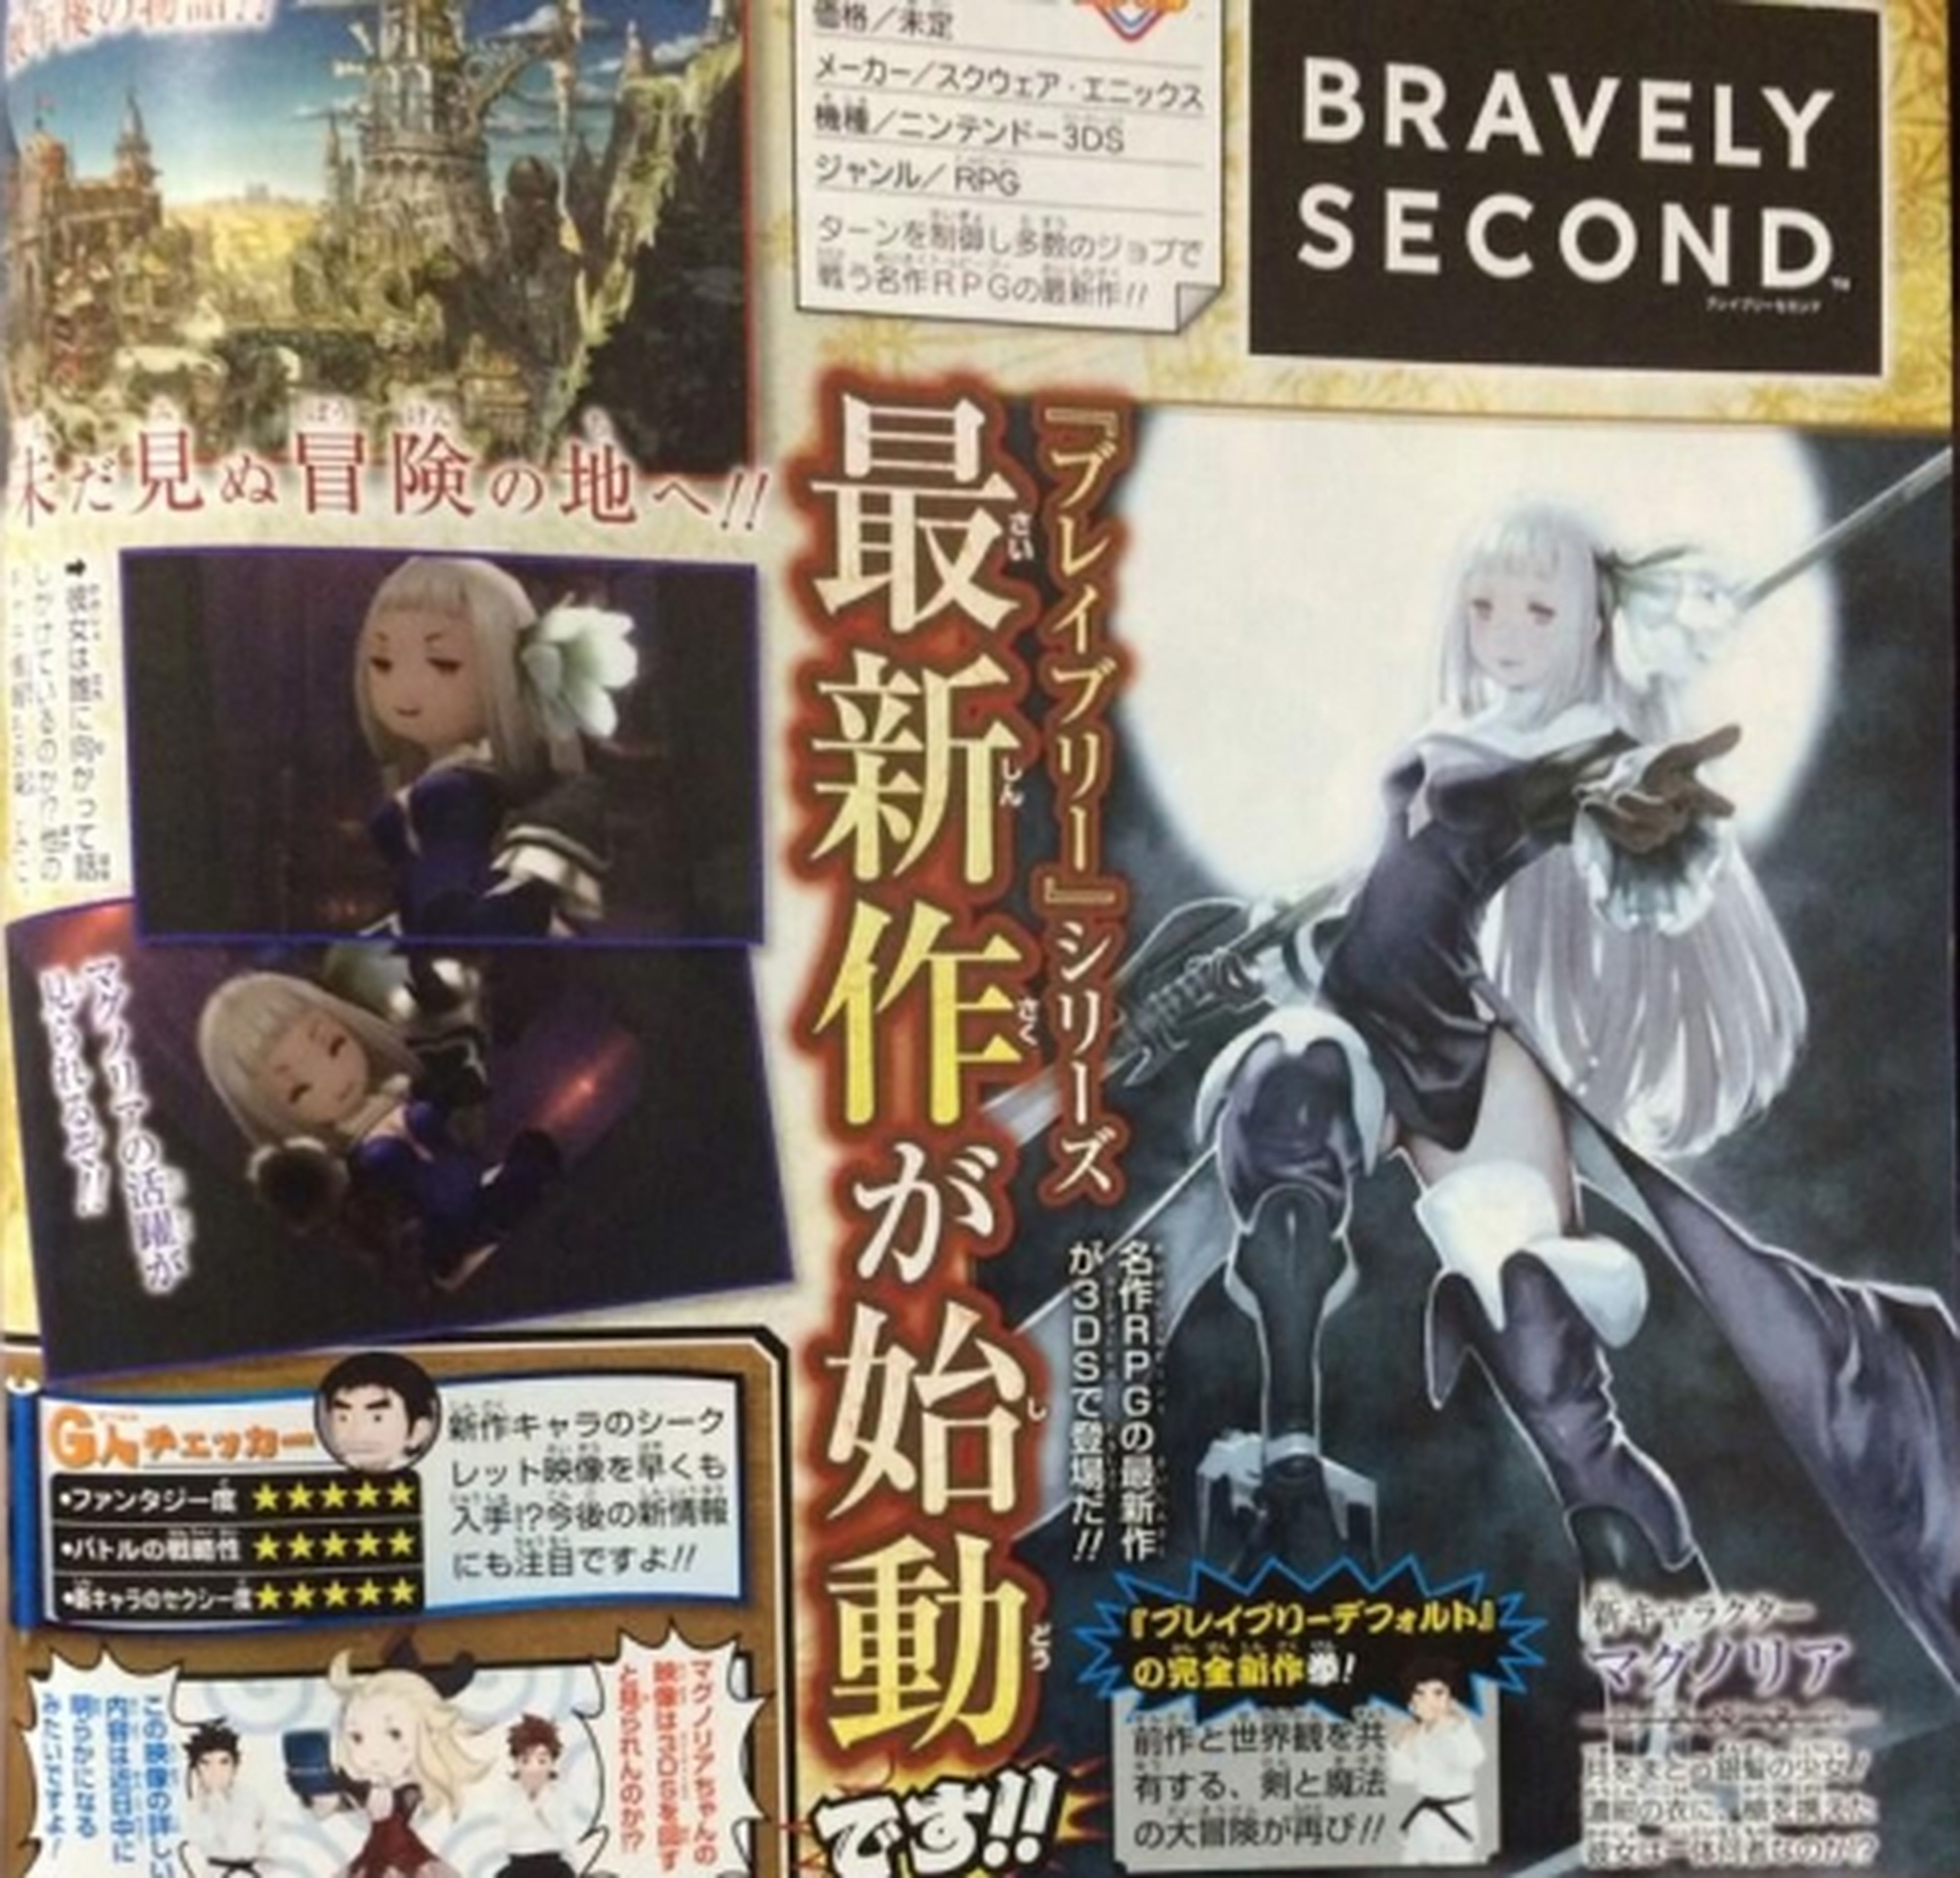 Bravely Second anunciado oficialmente por Square-Enix